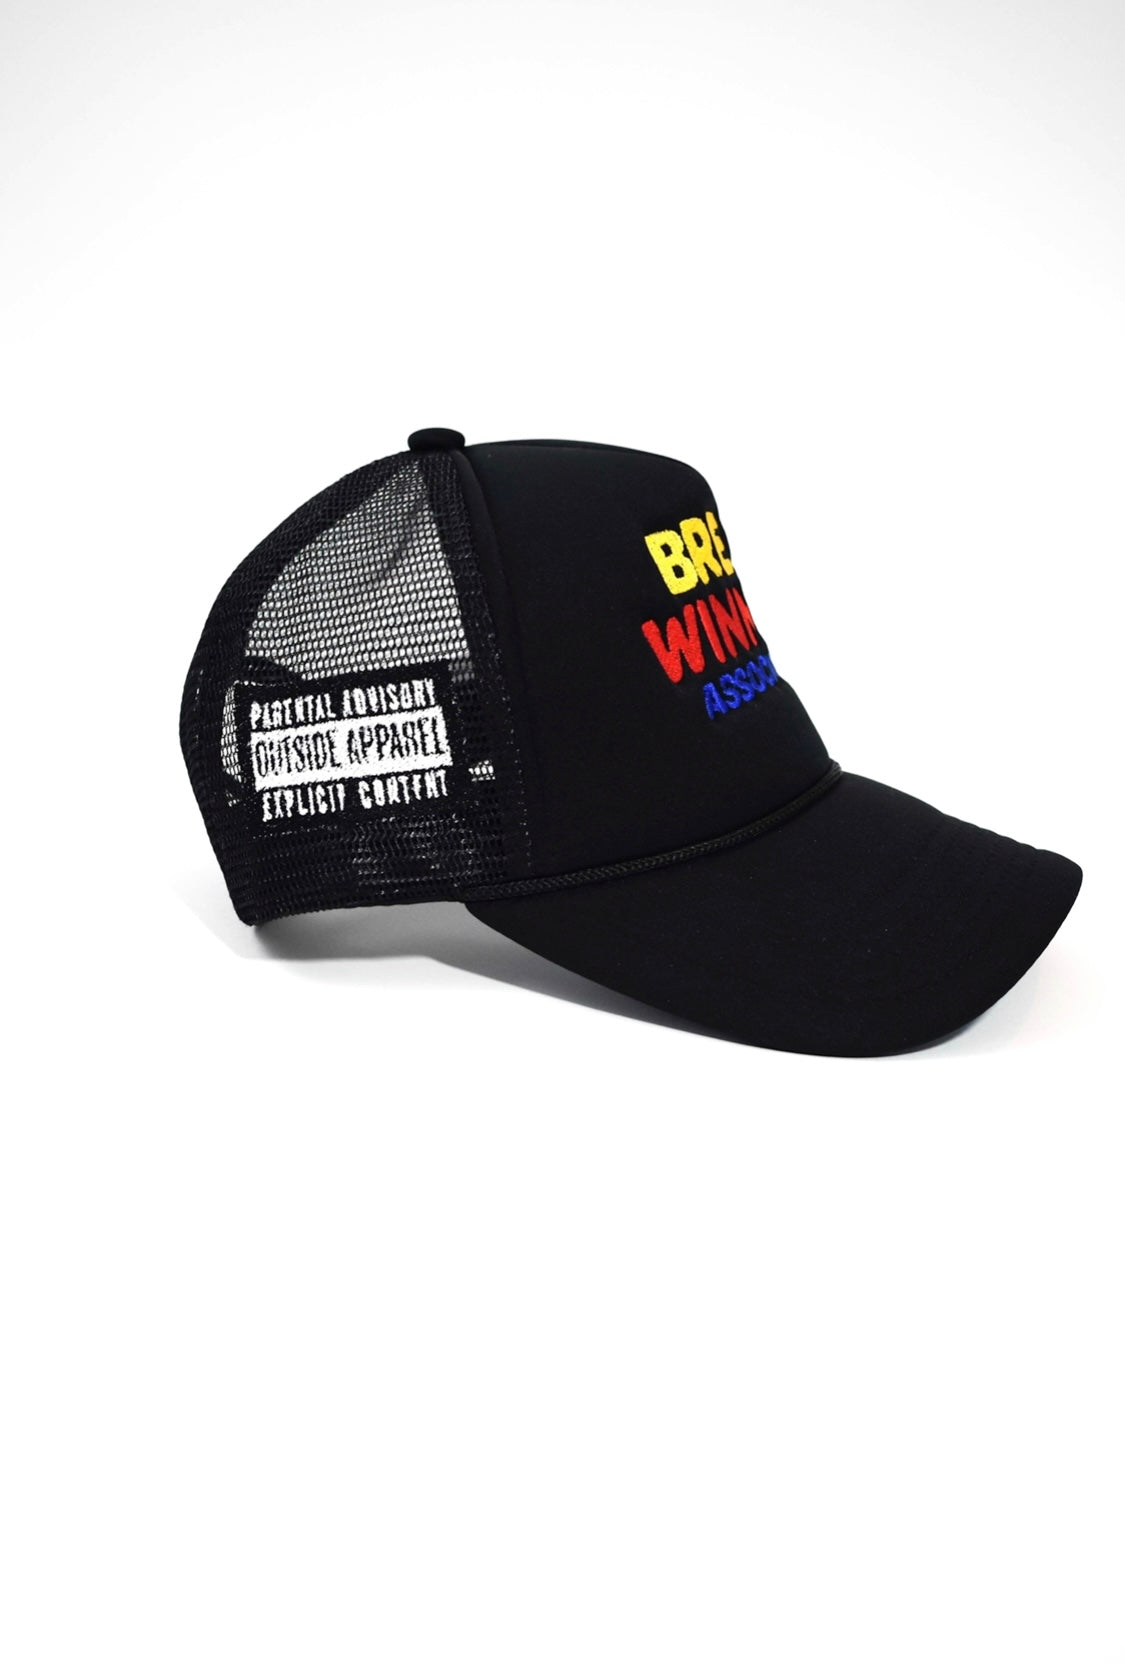 Bread Winner Trucker Hat